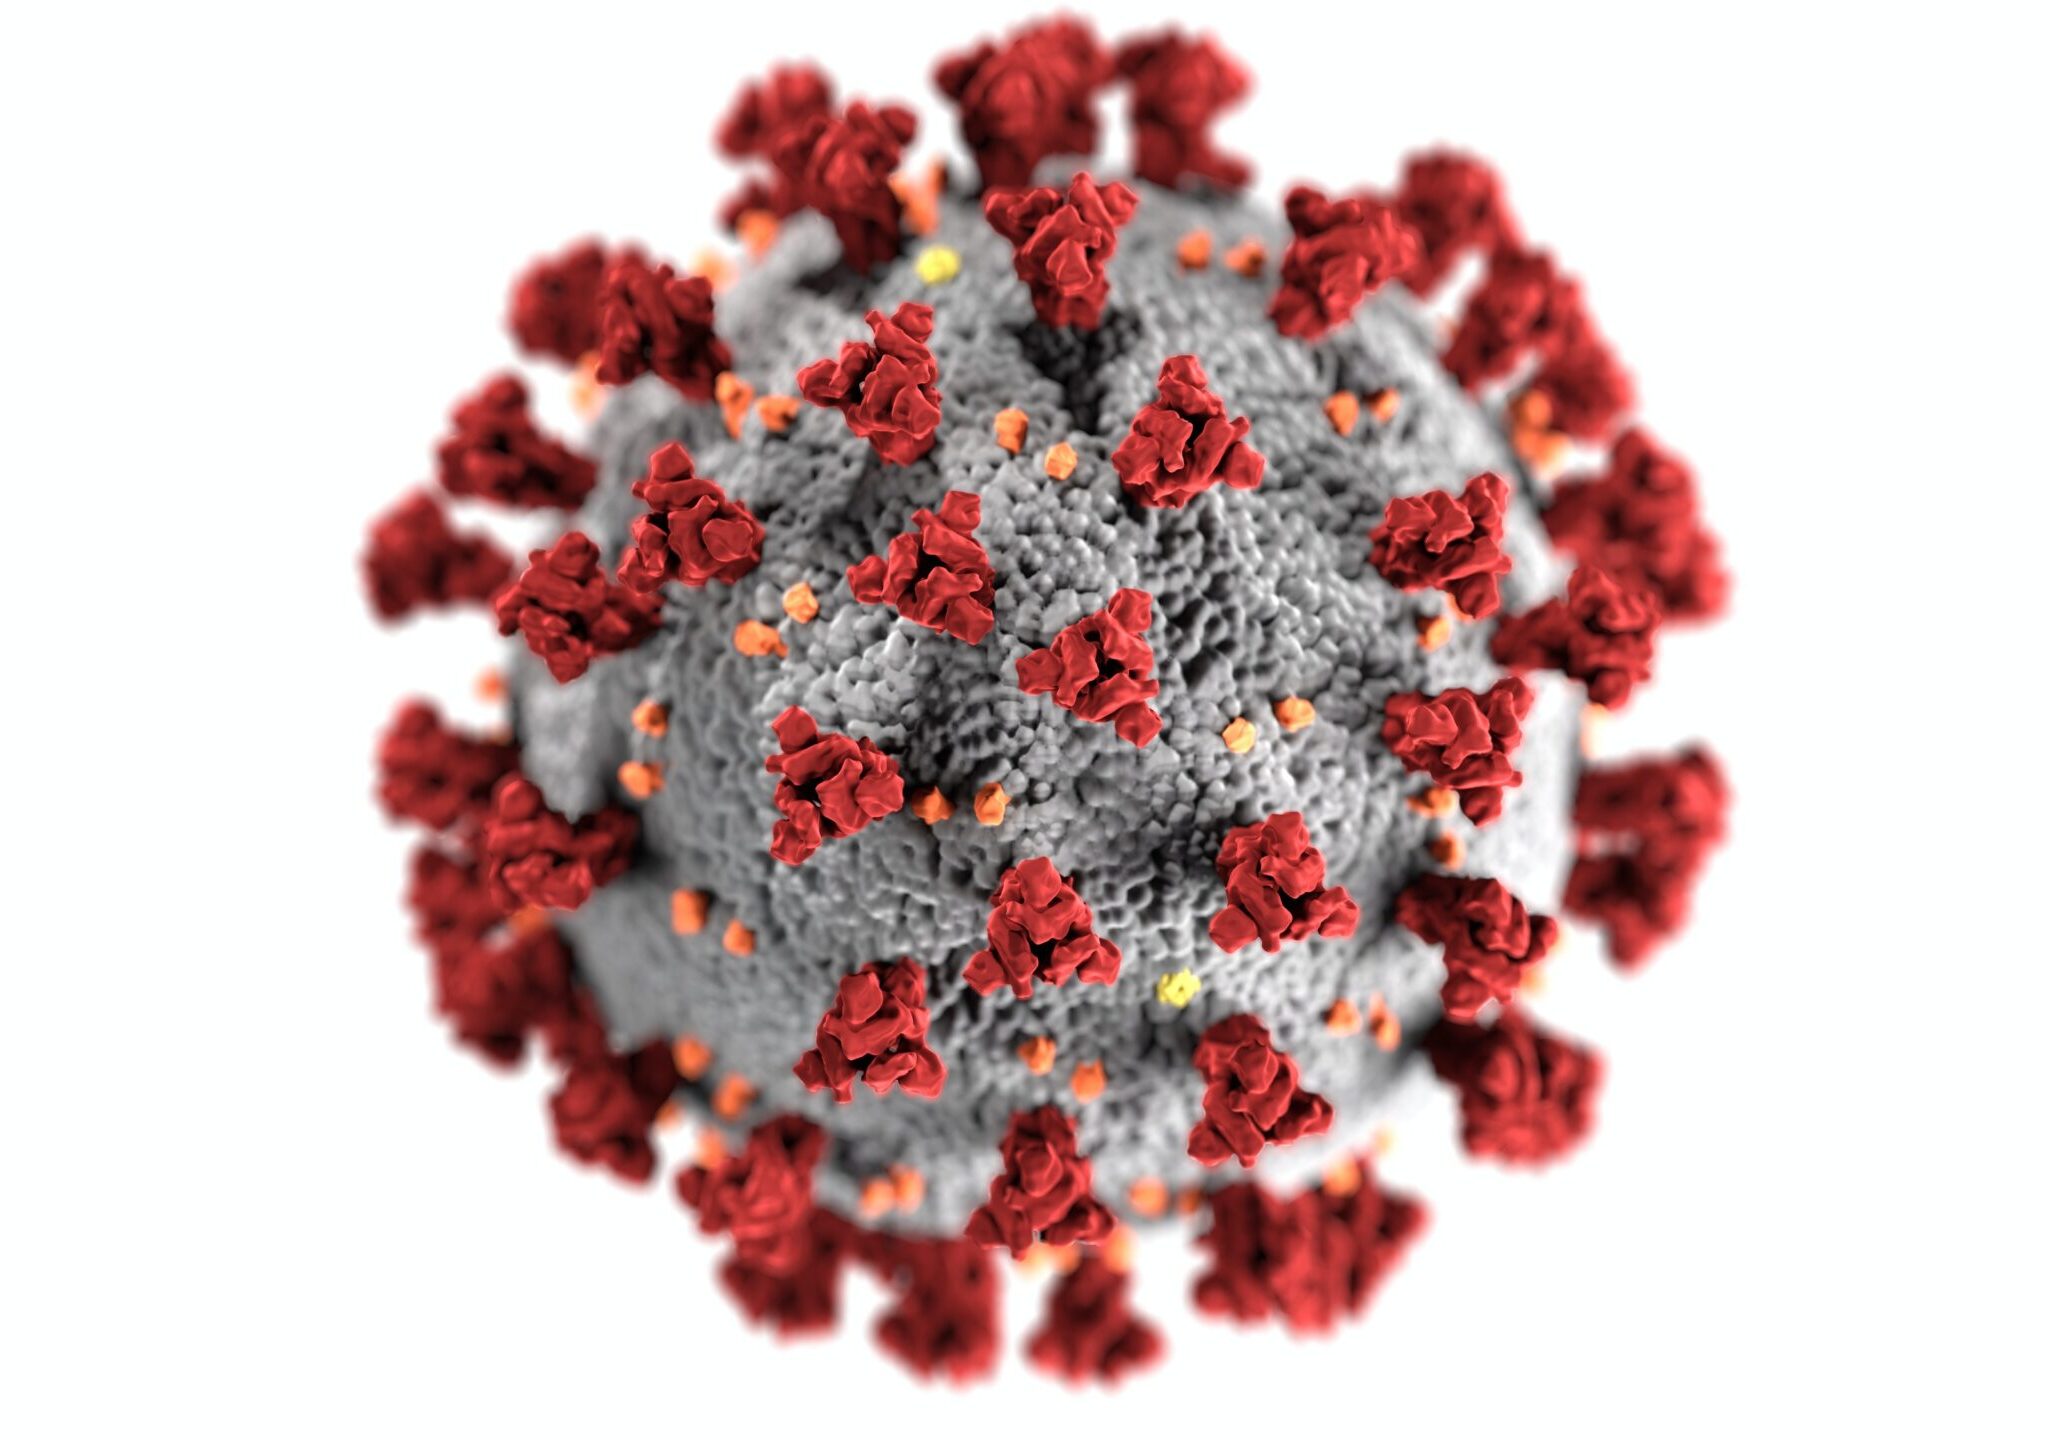 Coronavirus graphic